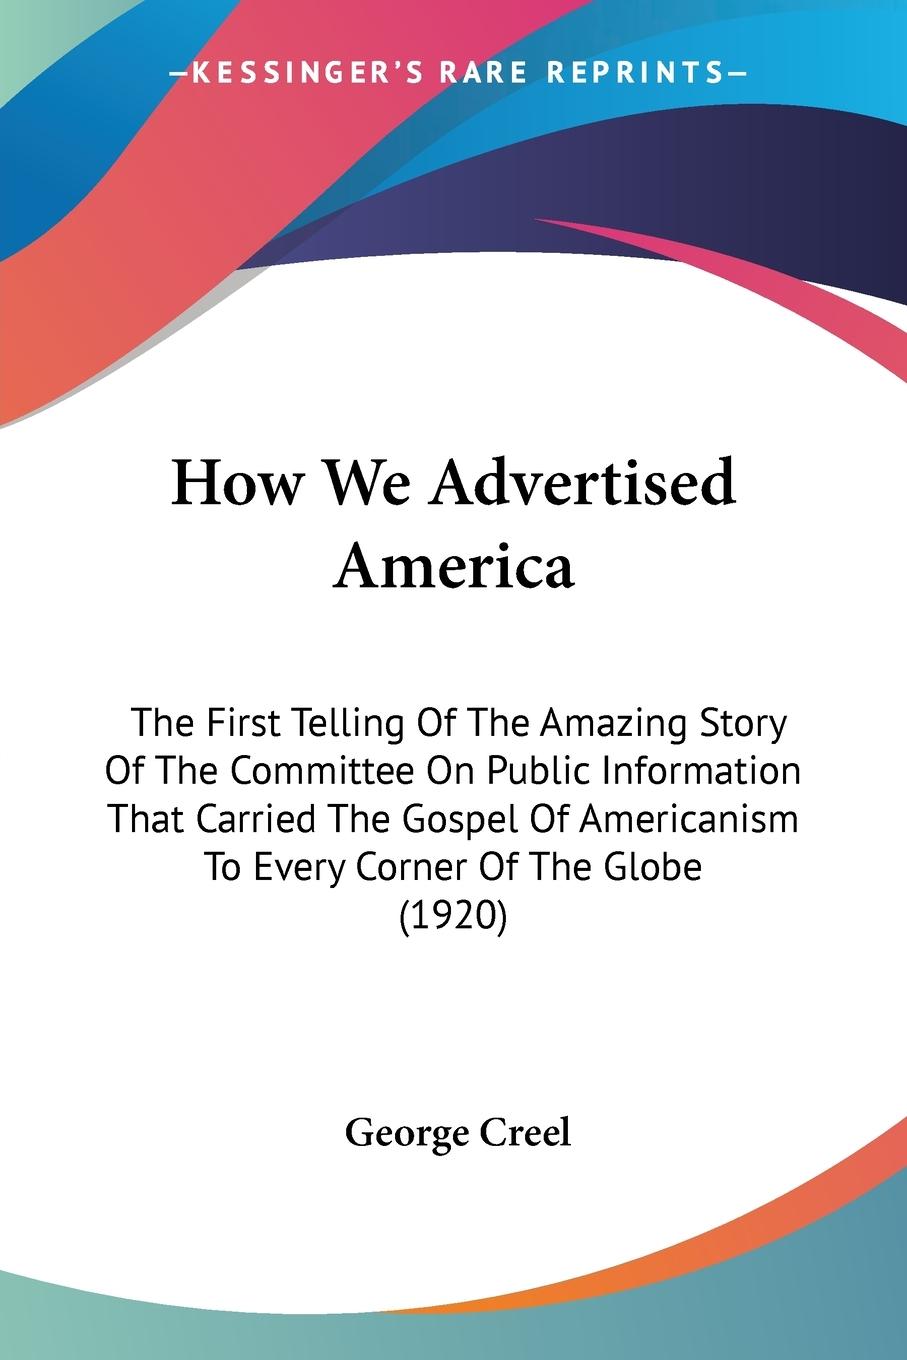 How We Advertised America - Creel, George